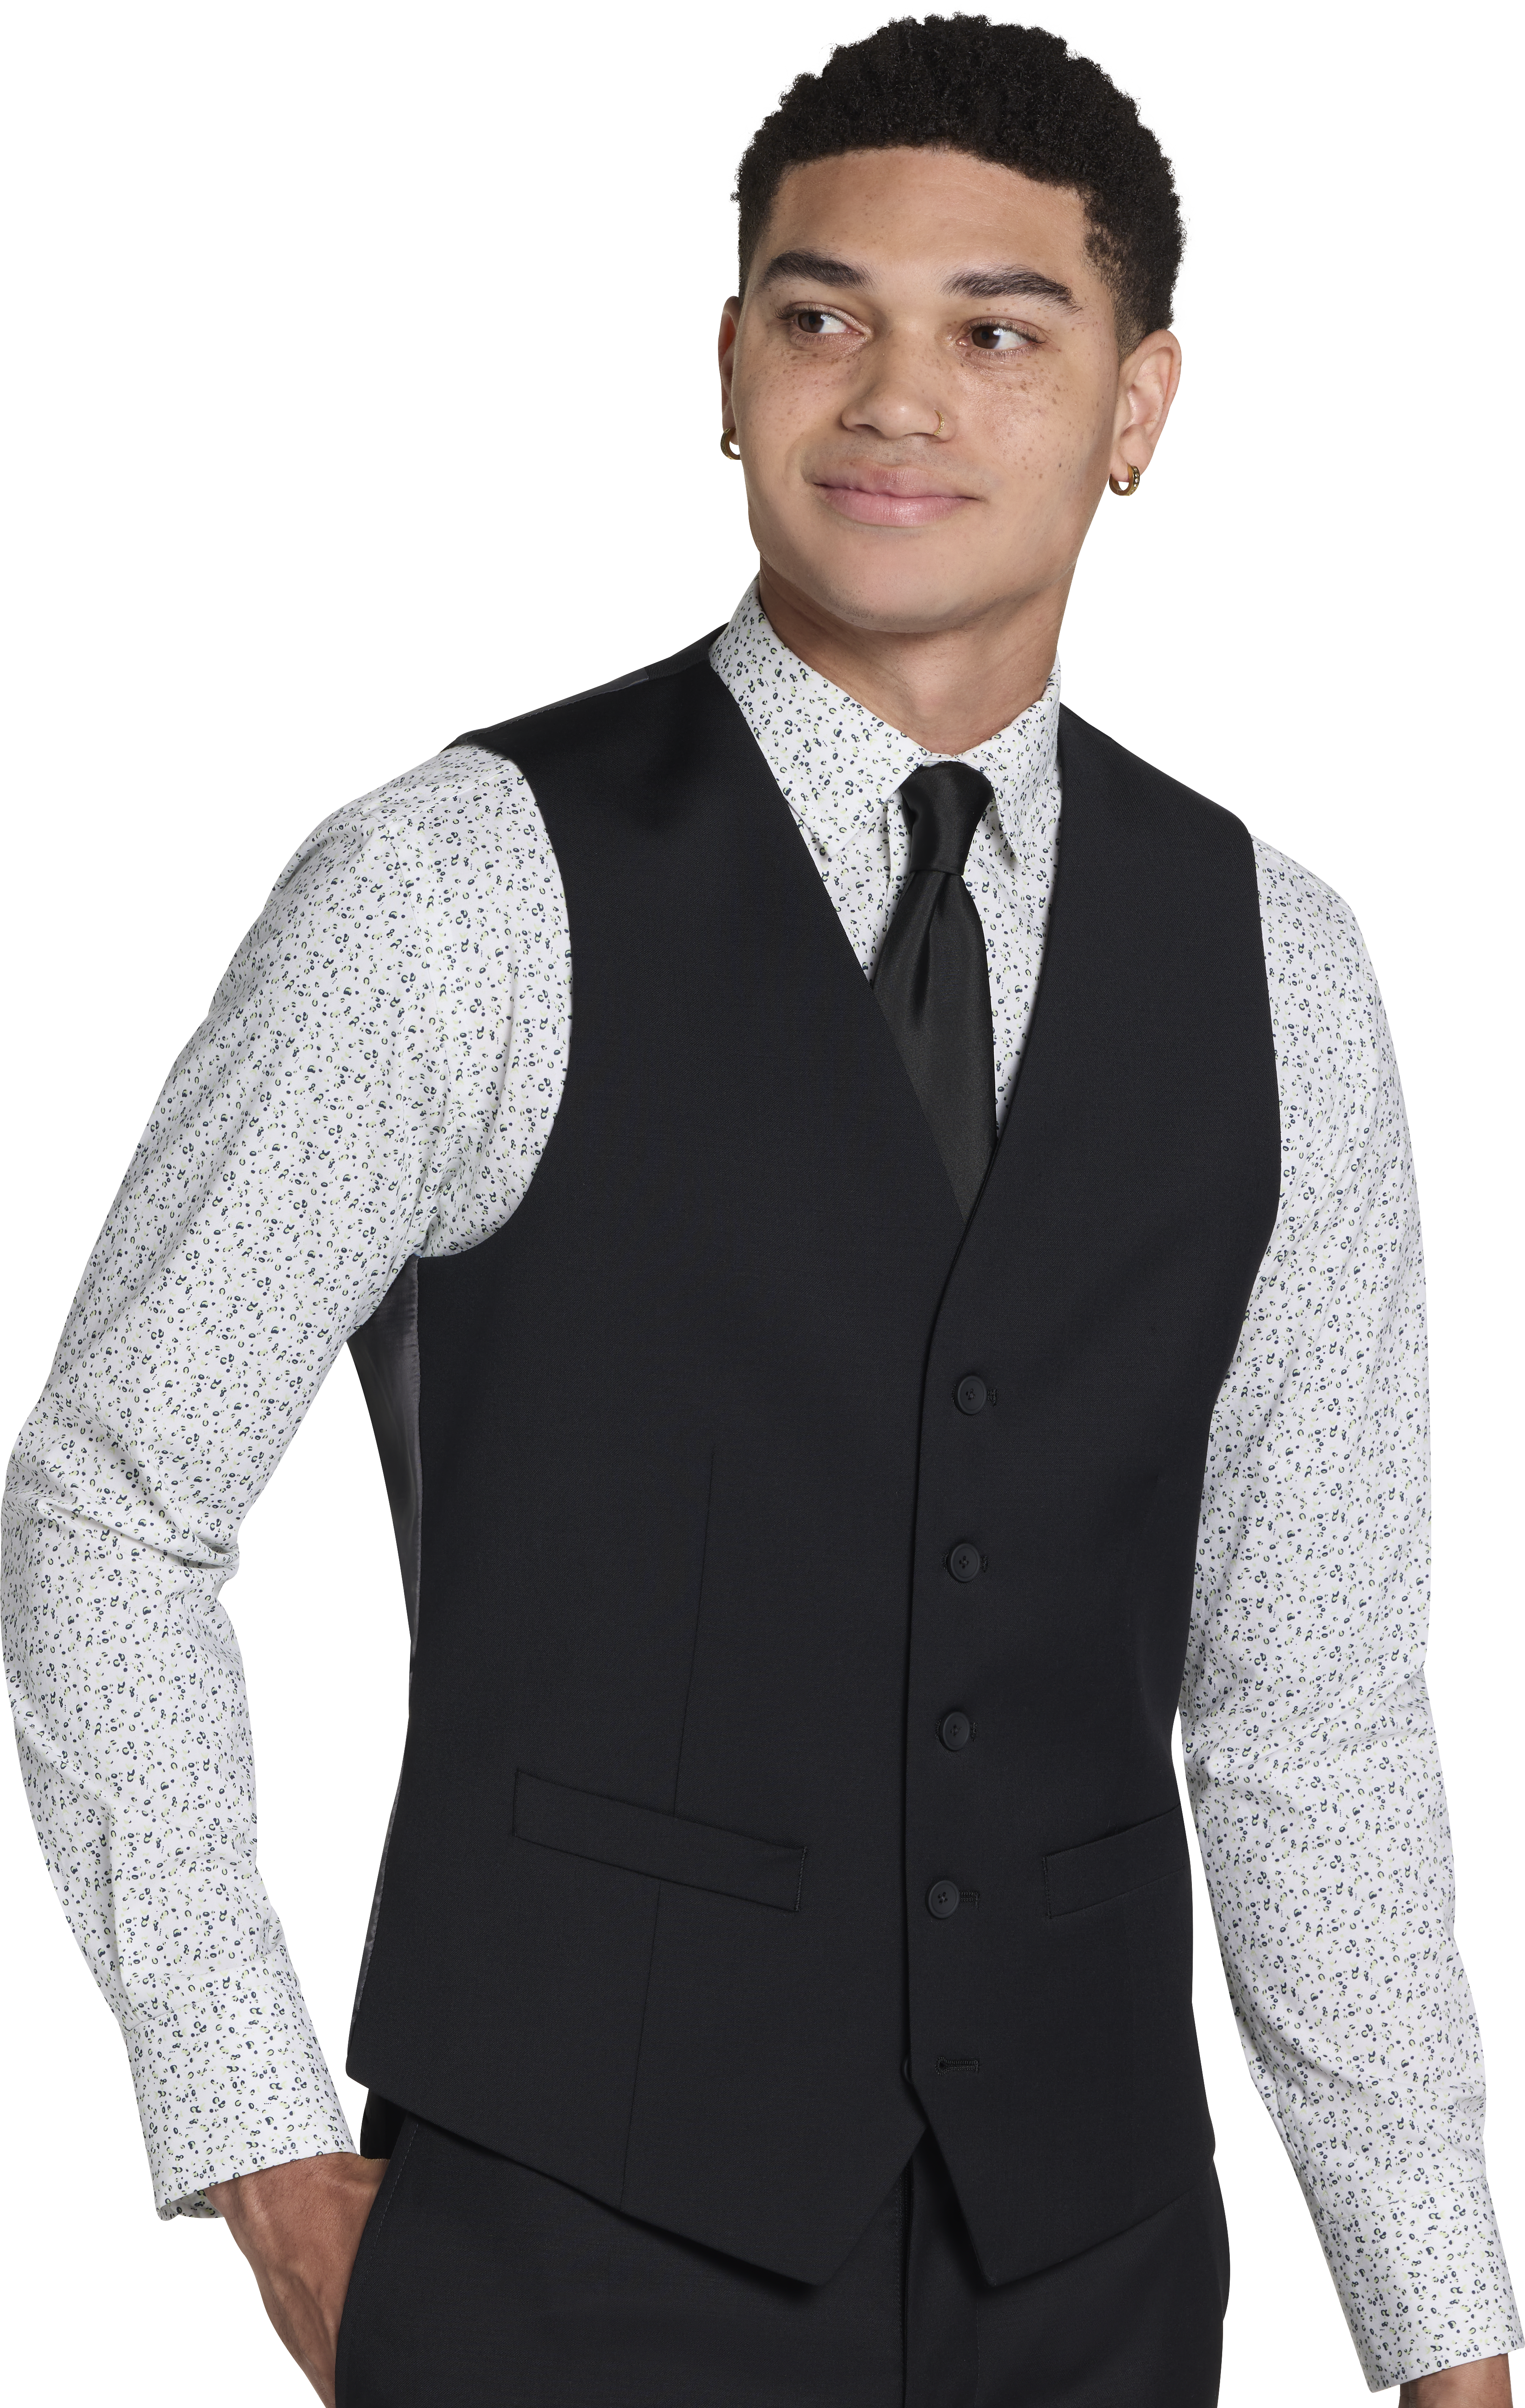 CHILLFLEX Slim Fit Suit Separates Vest